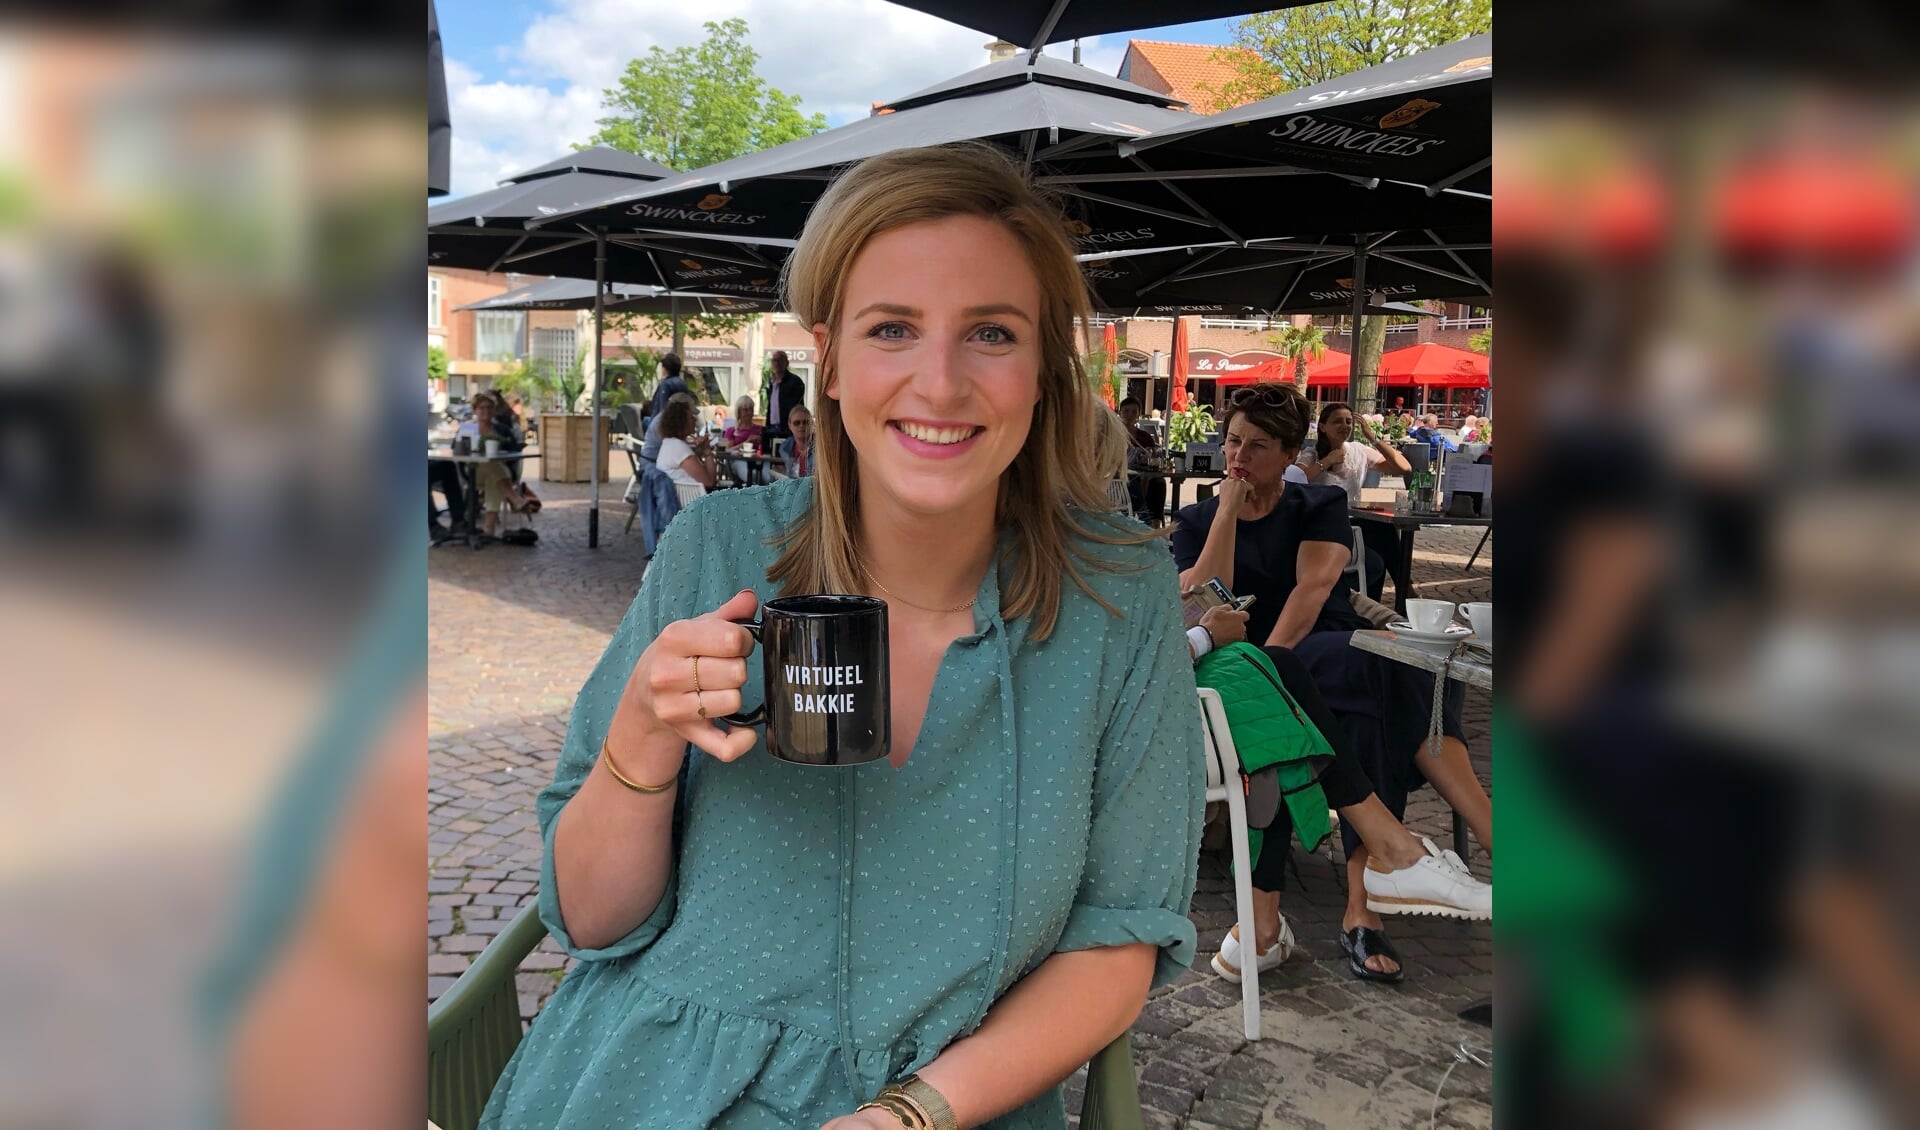 Lisanne Halleriet: “Voorlopig ben ik nog niet vertrokken uit de Achterhoek. Ik vind het fijn wonen in Winterswijk en heb het goed naar mijn zin!” Foto; Han van de Laar